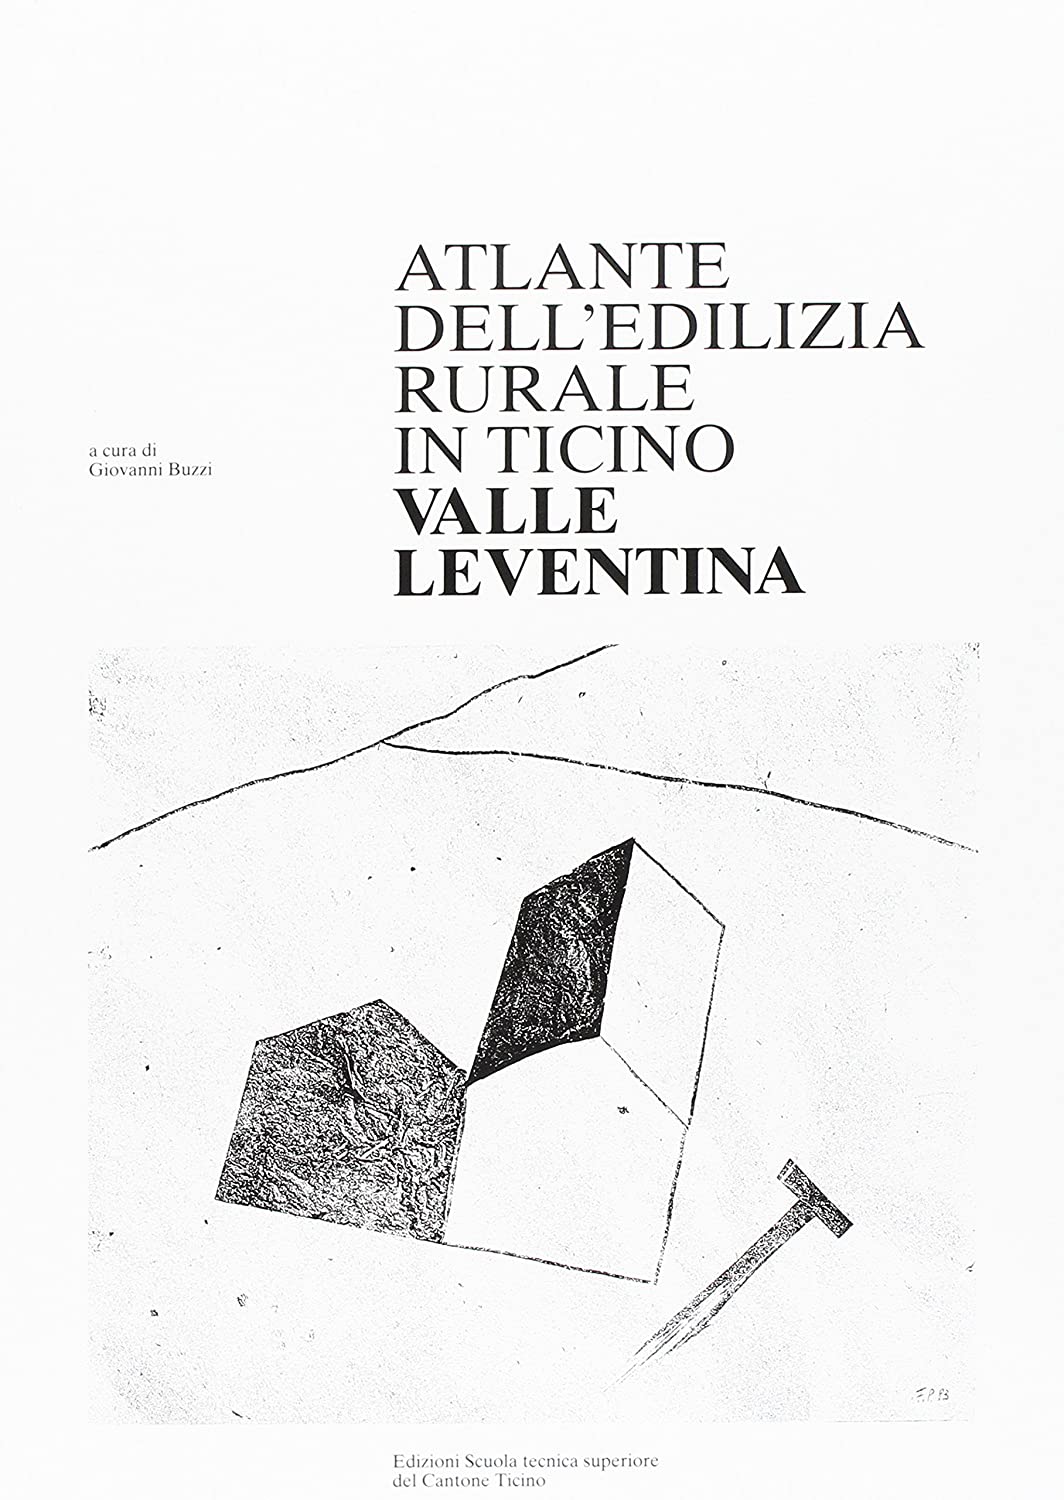 Libri Giovanni Buzzi - Atlante Dell'Edilizia Rurale Del Canton Ticino. Leventina NUOVO SIGILLATO SUBITO DISPONIBILE